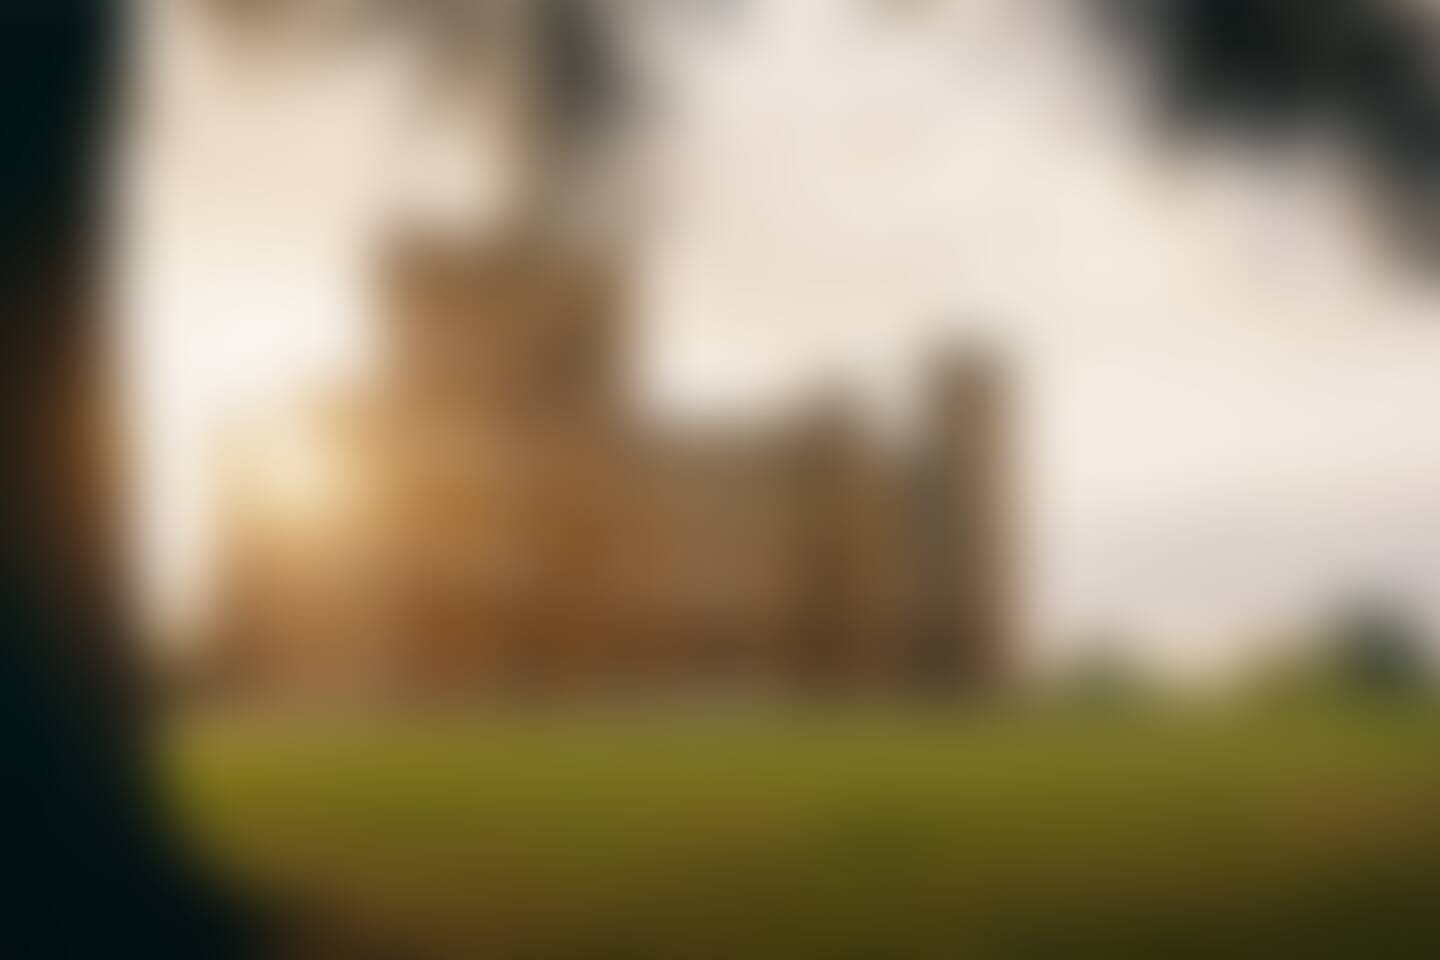 Downton Abbey, Oxford, Bampton & Highclere Castle